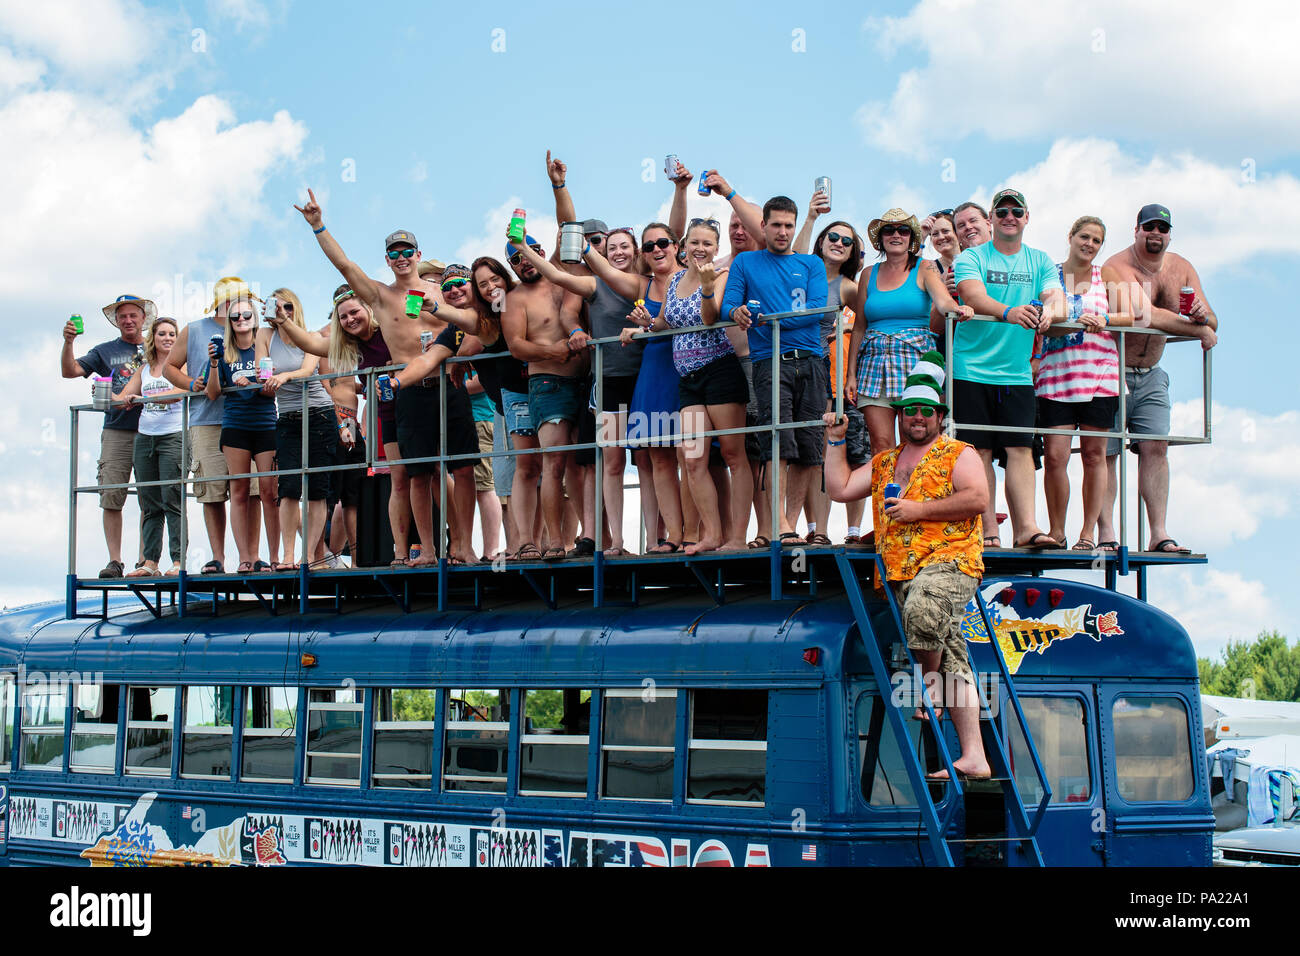 Les participants au sommet d'un bus à Hodag Country Music Festival Rhinelander, WI. Juillet 2018-2520.jpg Banque D'Images